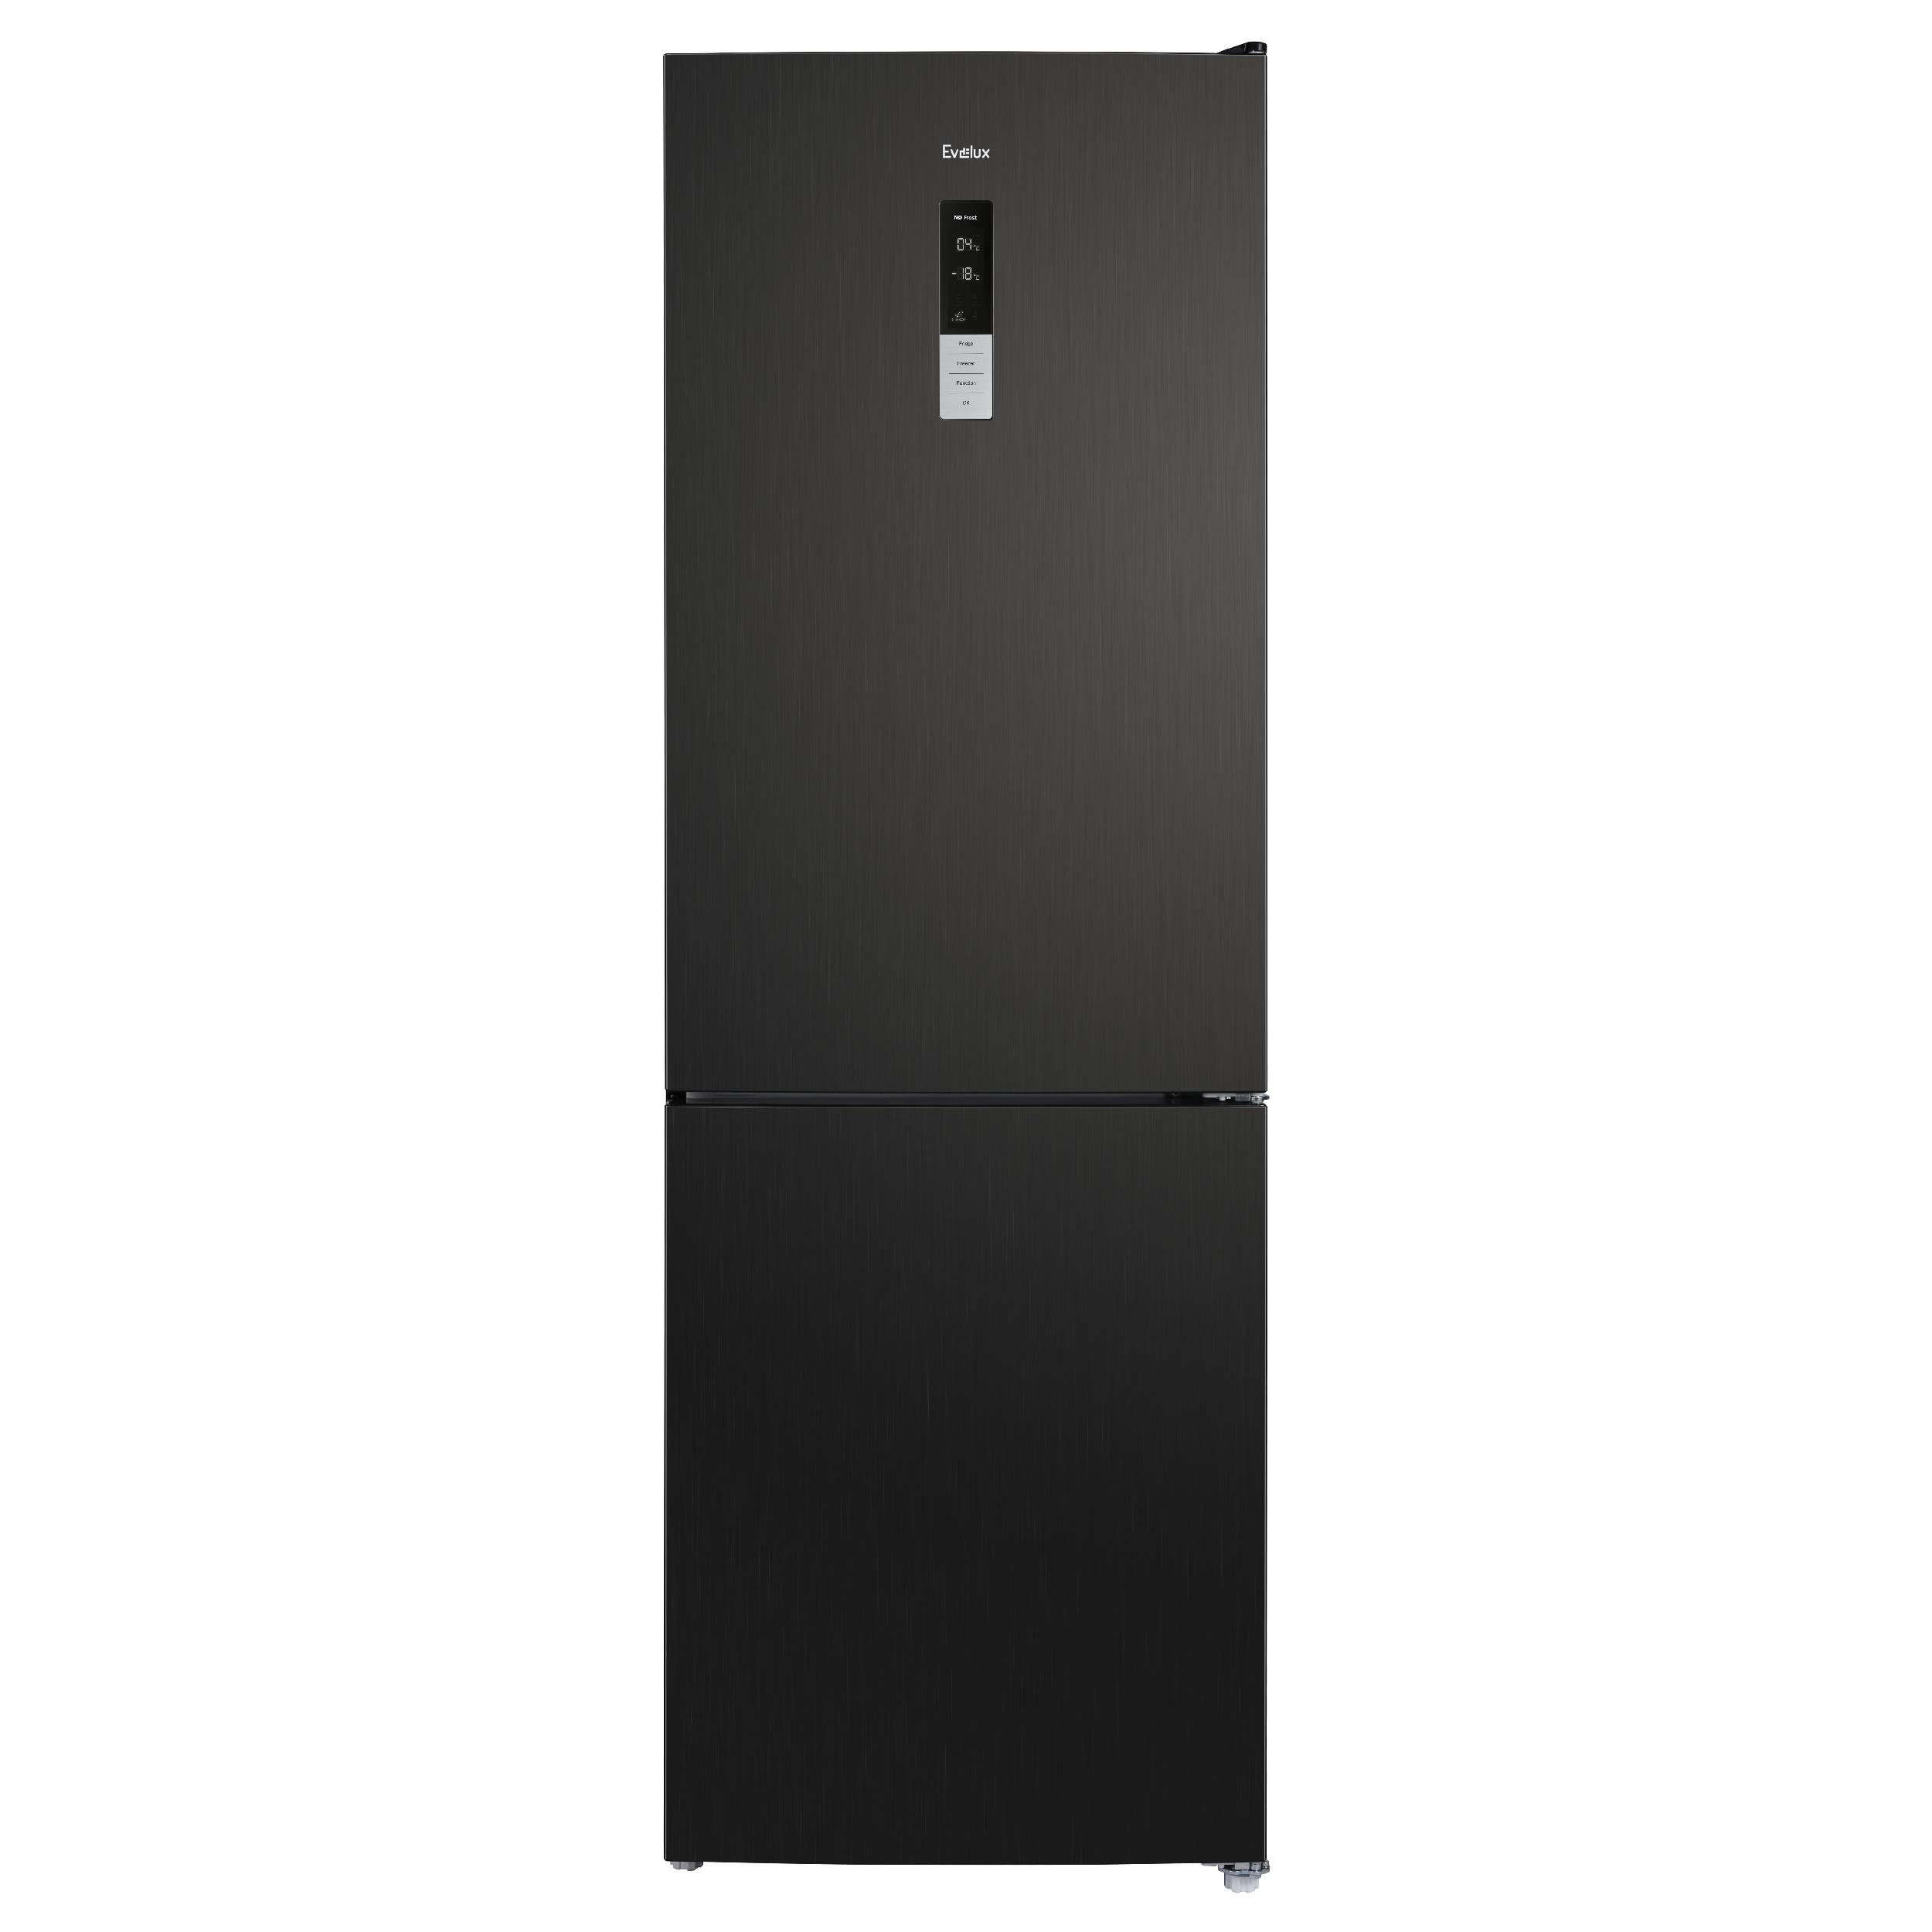 Холодильник Evelux FS 2201 DXN черный комбинированный варочный центр smeg cg90iant9 черный